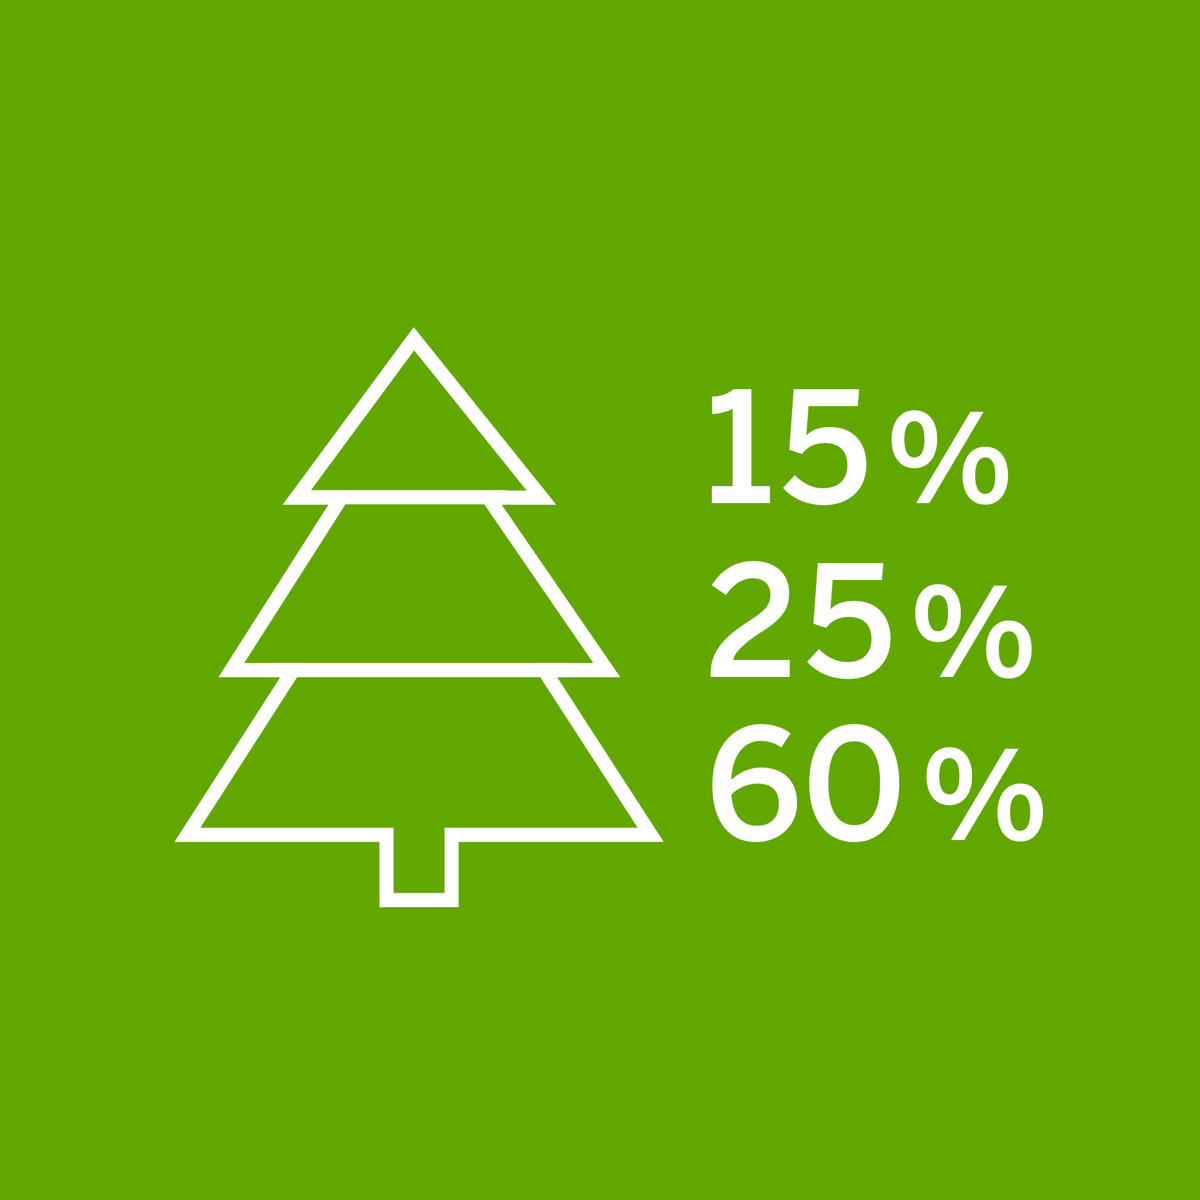 Wykorzystujemy 100 % drzewa: 15 % na energię, 25 % na masę włóknistą, 60 % na drewno.